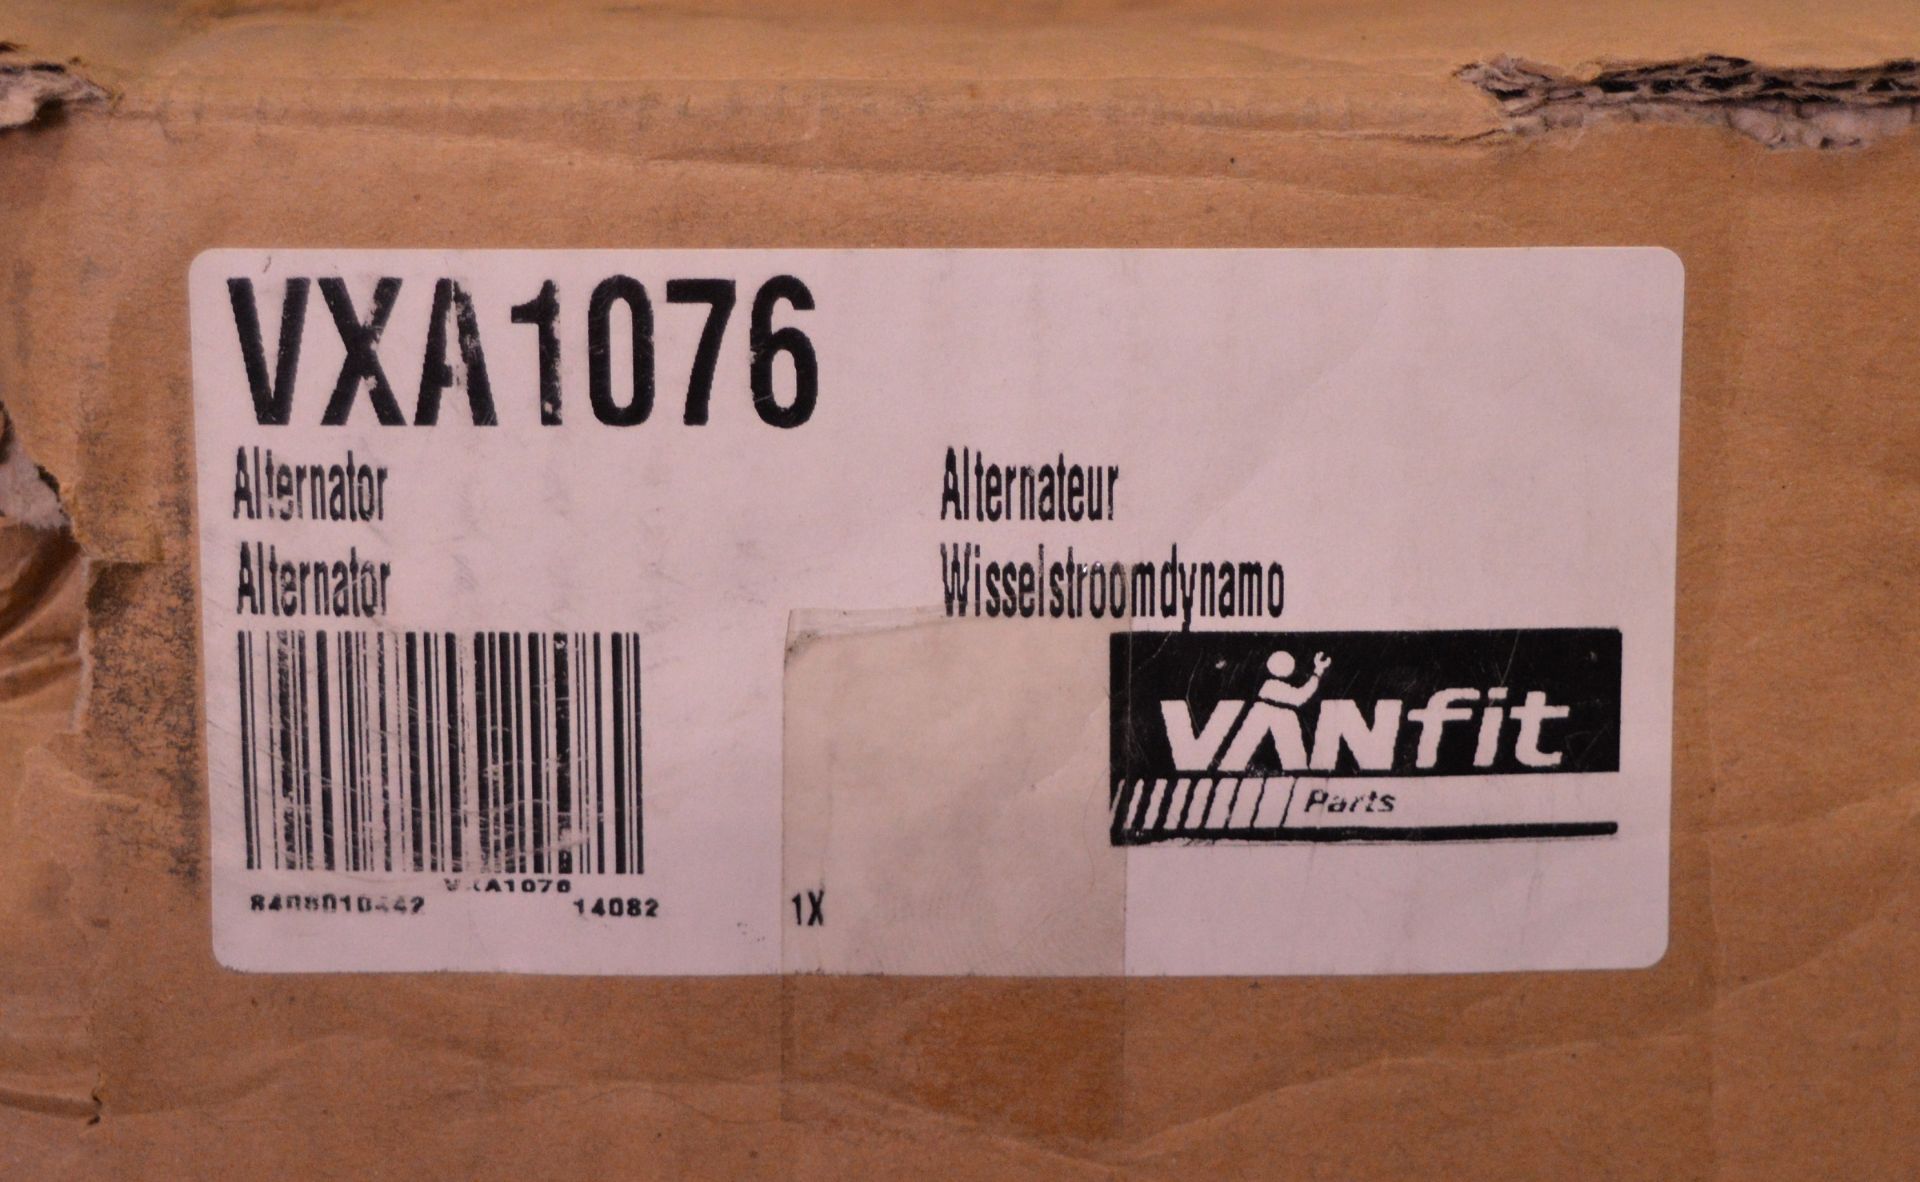 Van fit alternator VXA1076 - Image 2 of 2